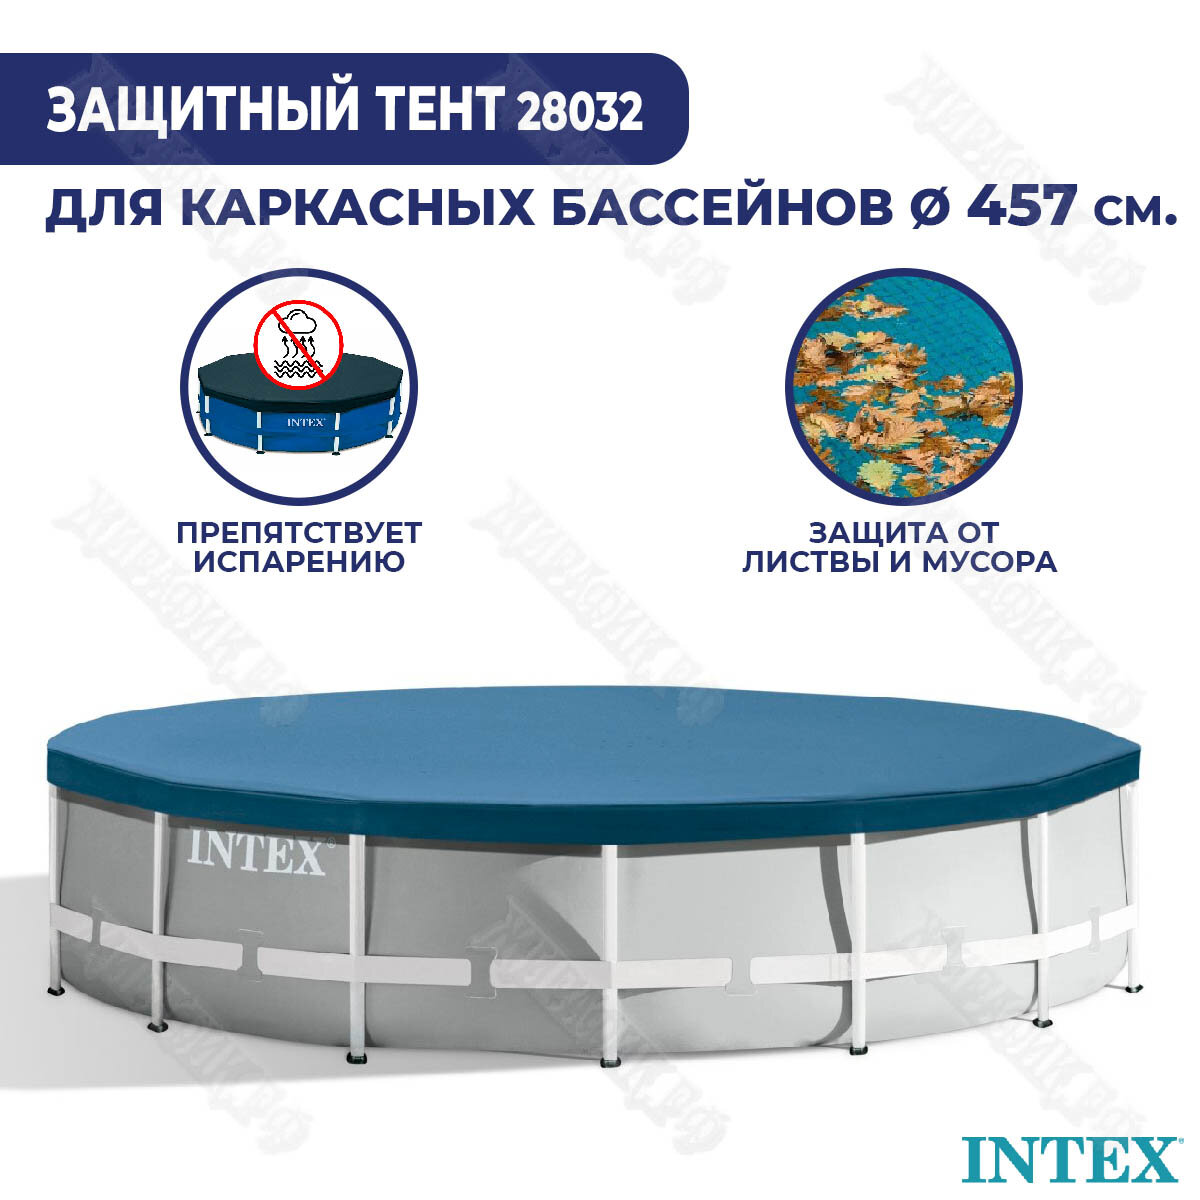 INTEX Тент для каркасных бассейнов 457 см 28032